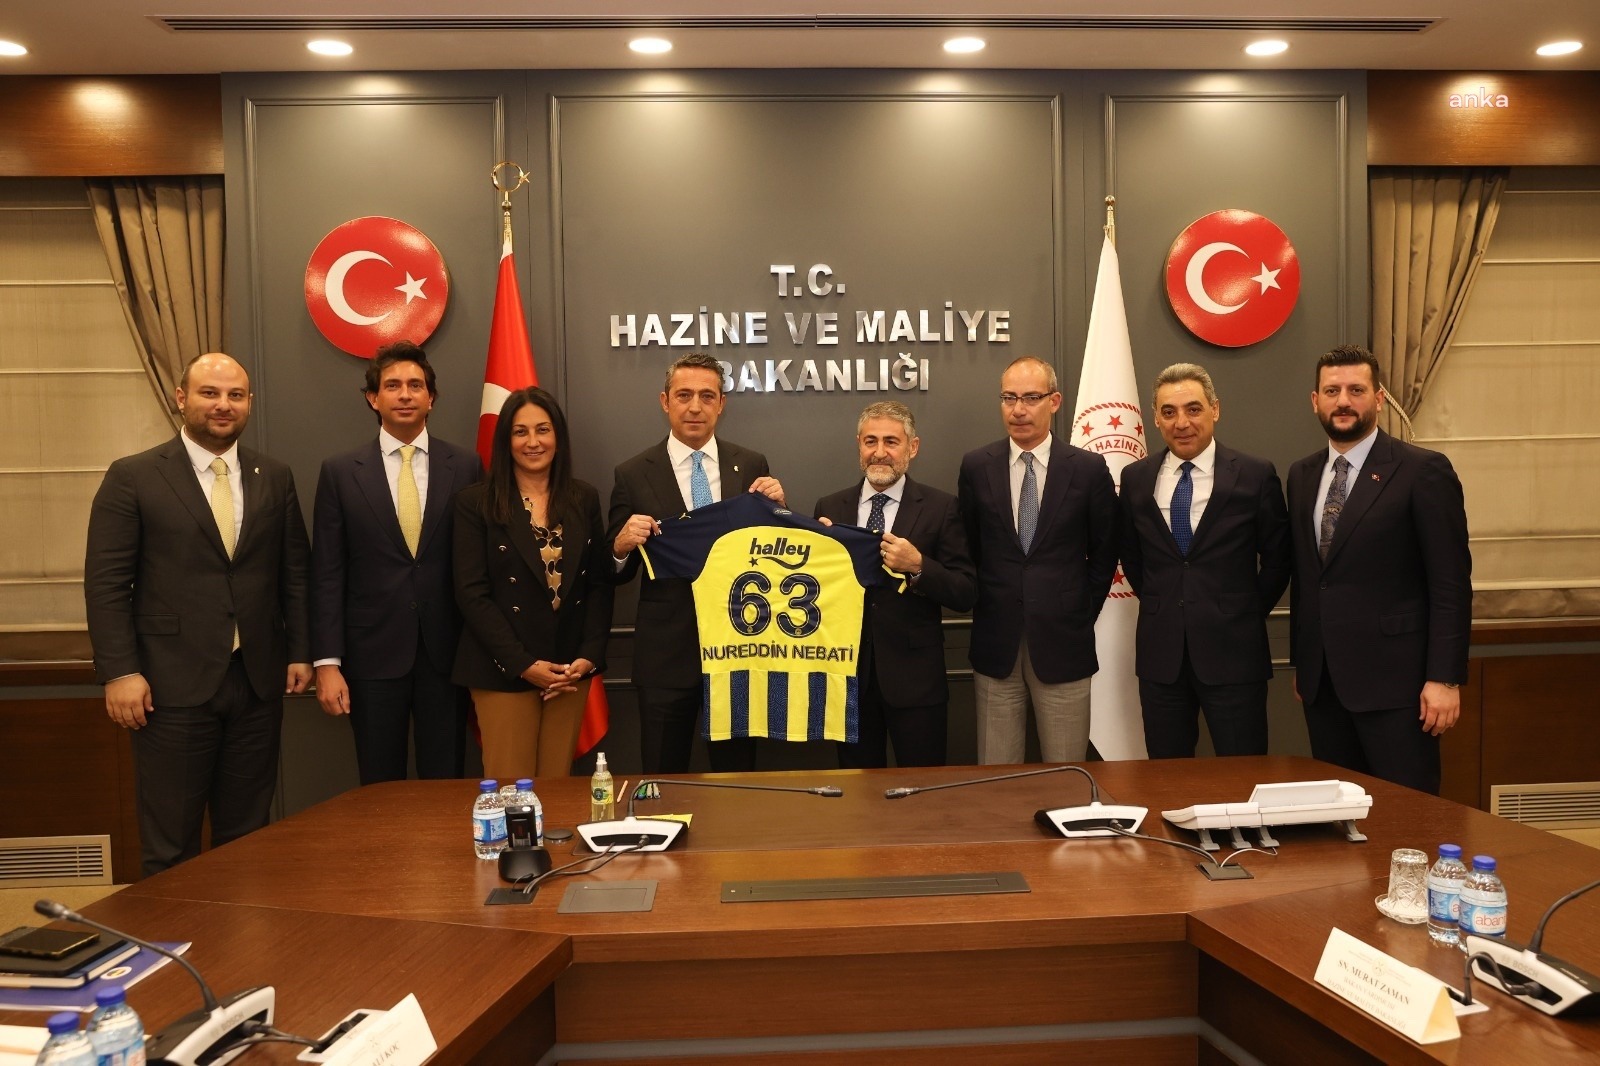 Bakan Nebati’yi Ziyaret Eden Fenerbahçe Başkanı Koç “63” Numaralı Fenerbahçe Formasını Hediye Etti